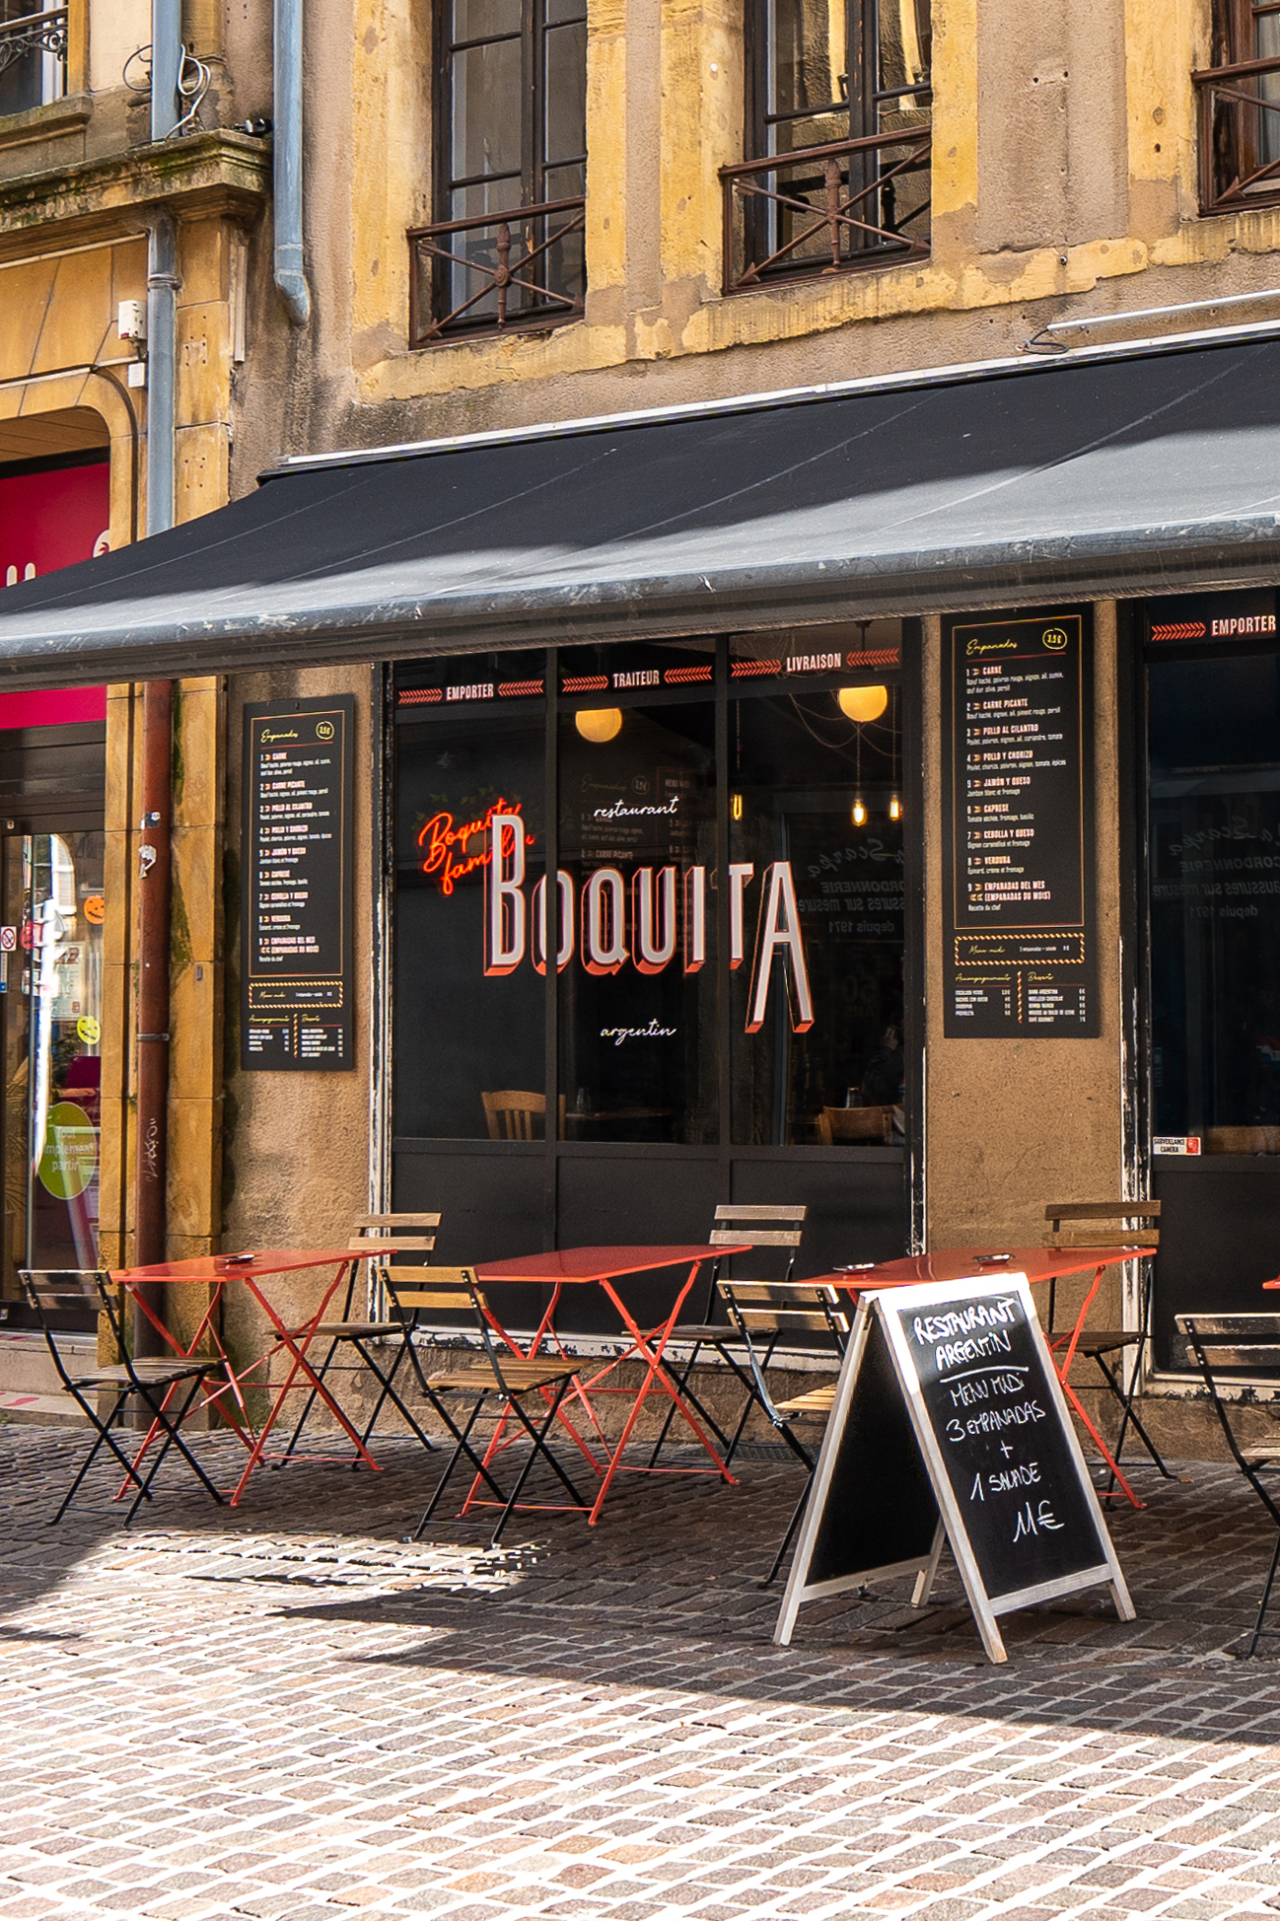 Restaurant Boquita image #5